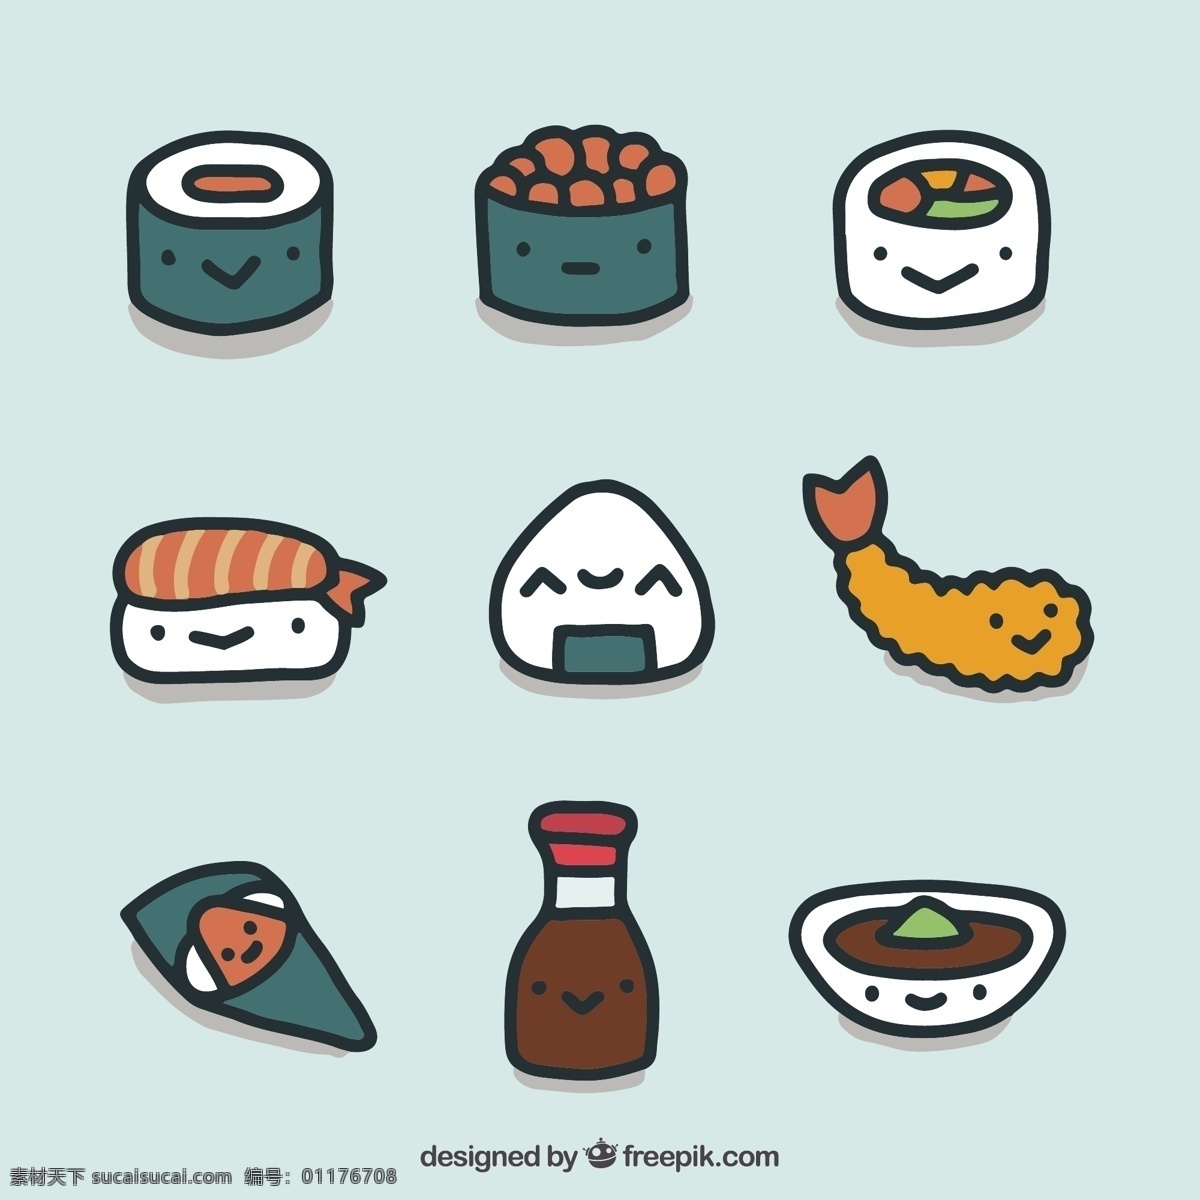 日本 手工 食品 收藏 食物方面 手绘 日本大米 日本寿司 手工绘图 绘图 绘制 亚洲 日本食品 酱 收集 美味 亚洲食品 美食 虾 图纸 大豆